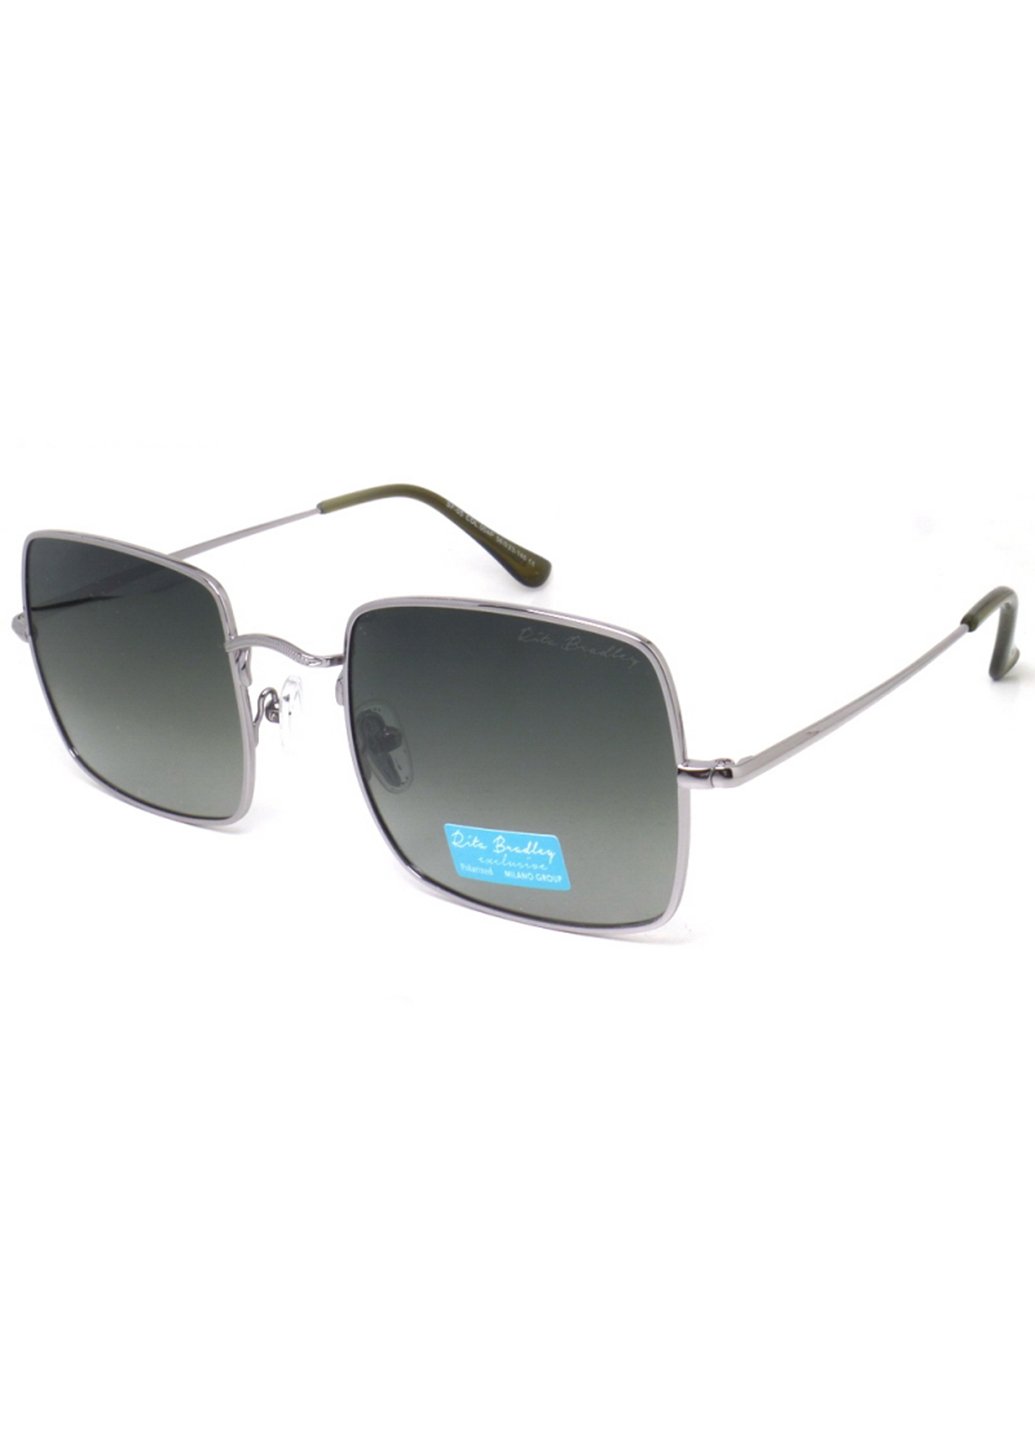 Купить Женские солнцезащитные очки Rita Bradley с поляризацией RB-05 112002 в интернет-магазине